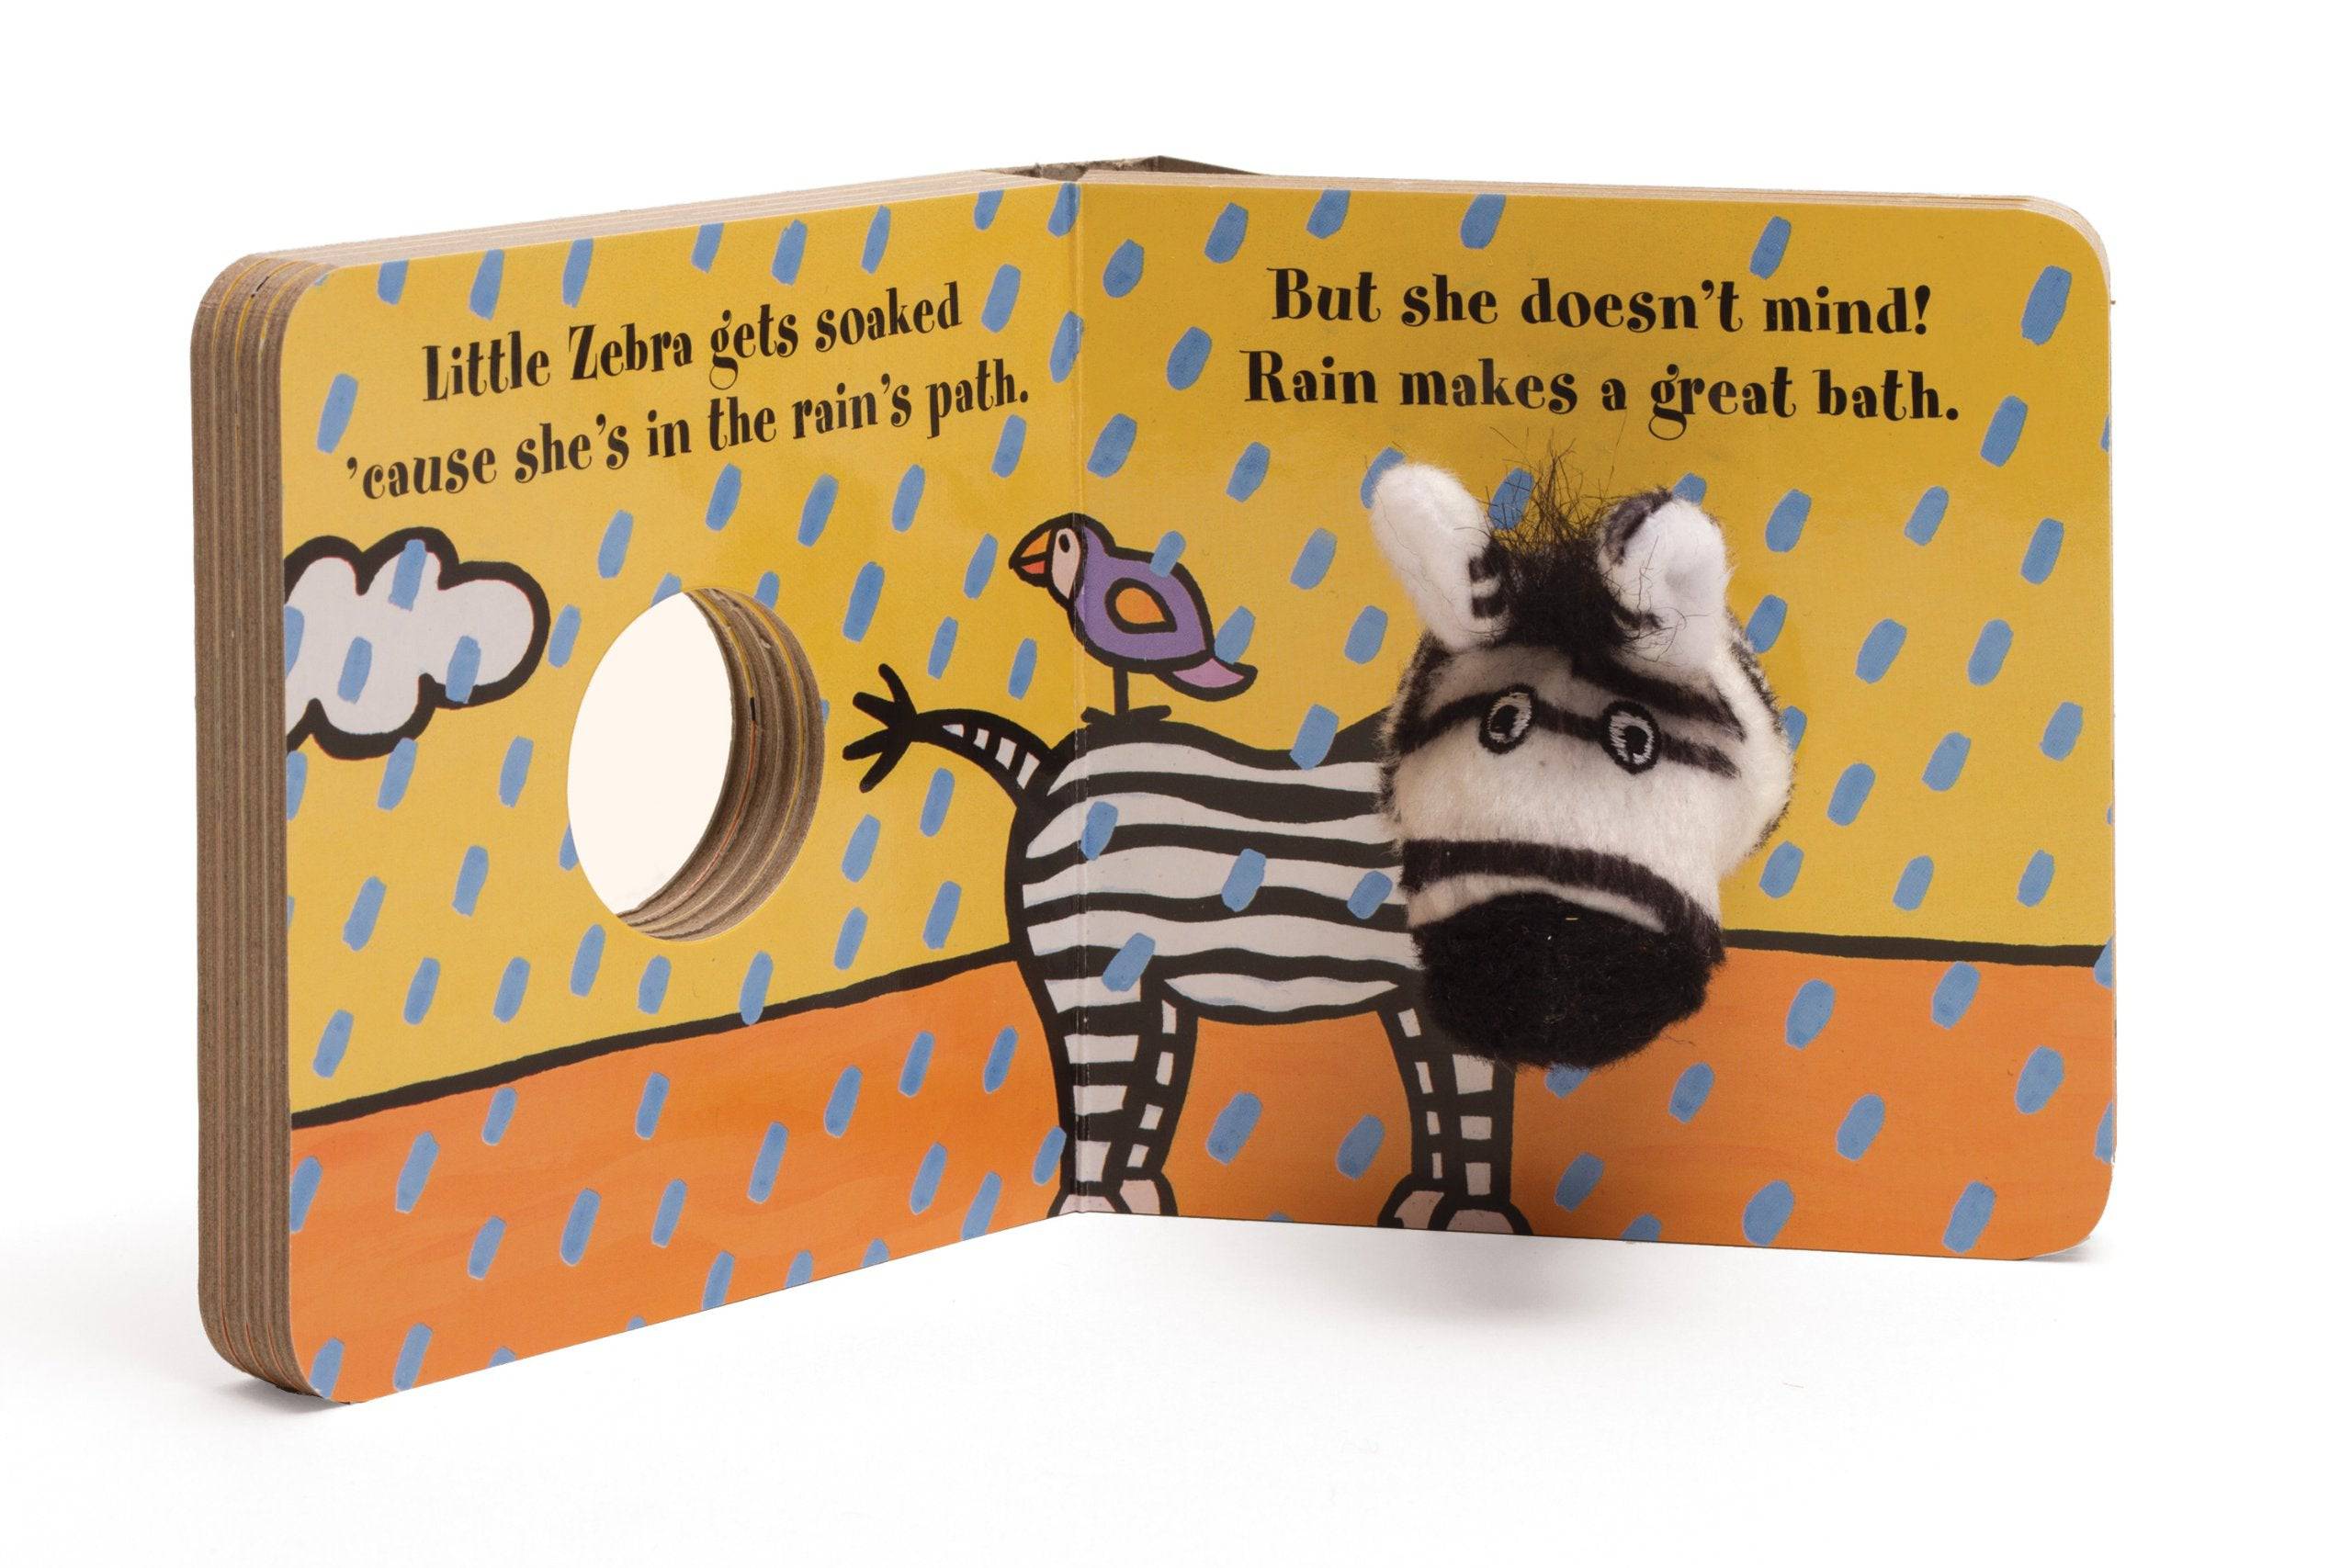 Little Zebra Finger Puppet Book - Twinkle Twinkle Little One